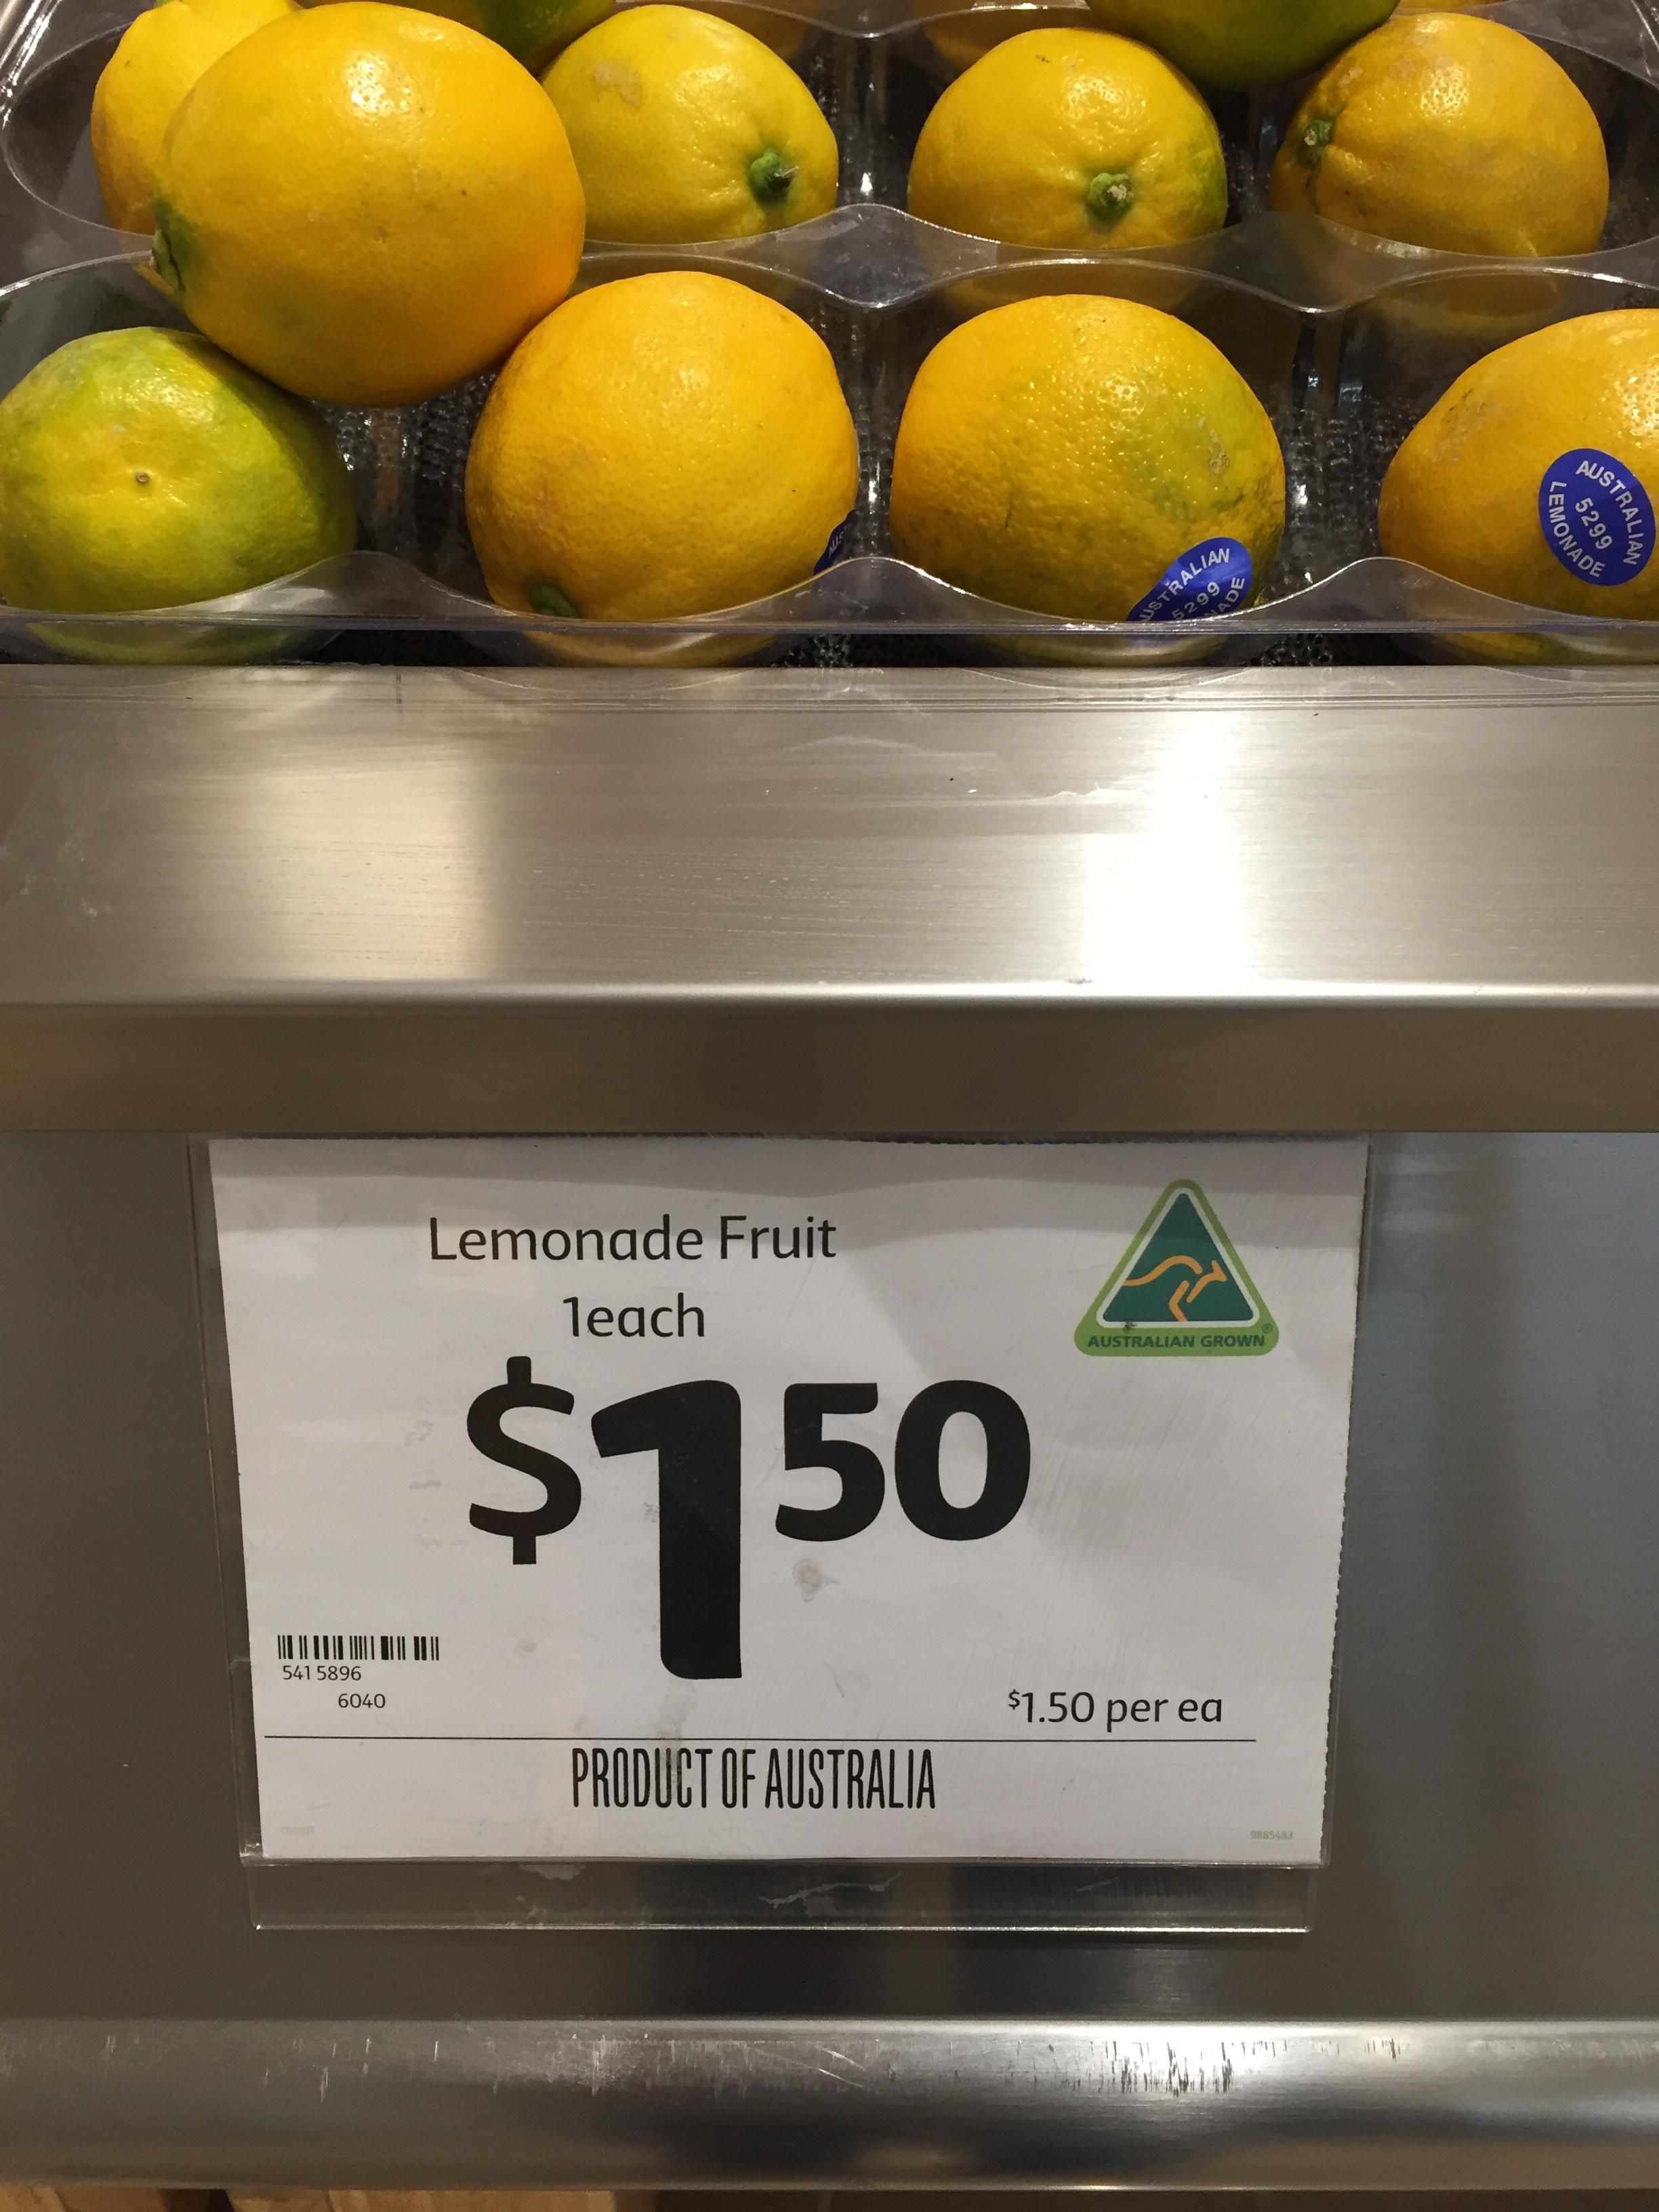 When life gives you... Lemonade fruits?